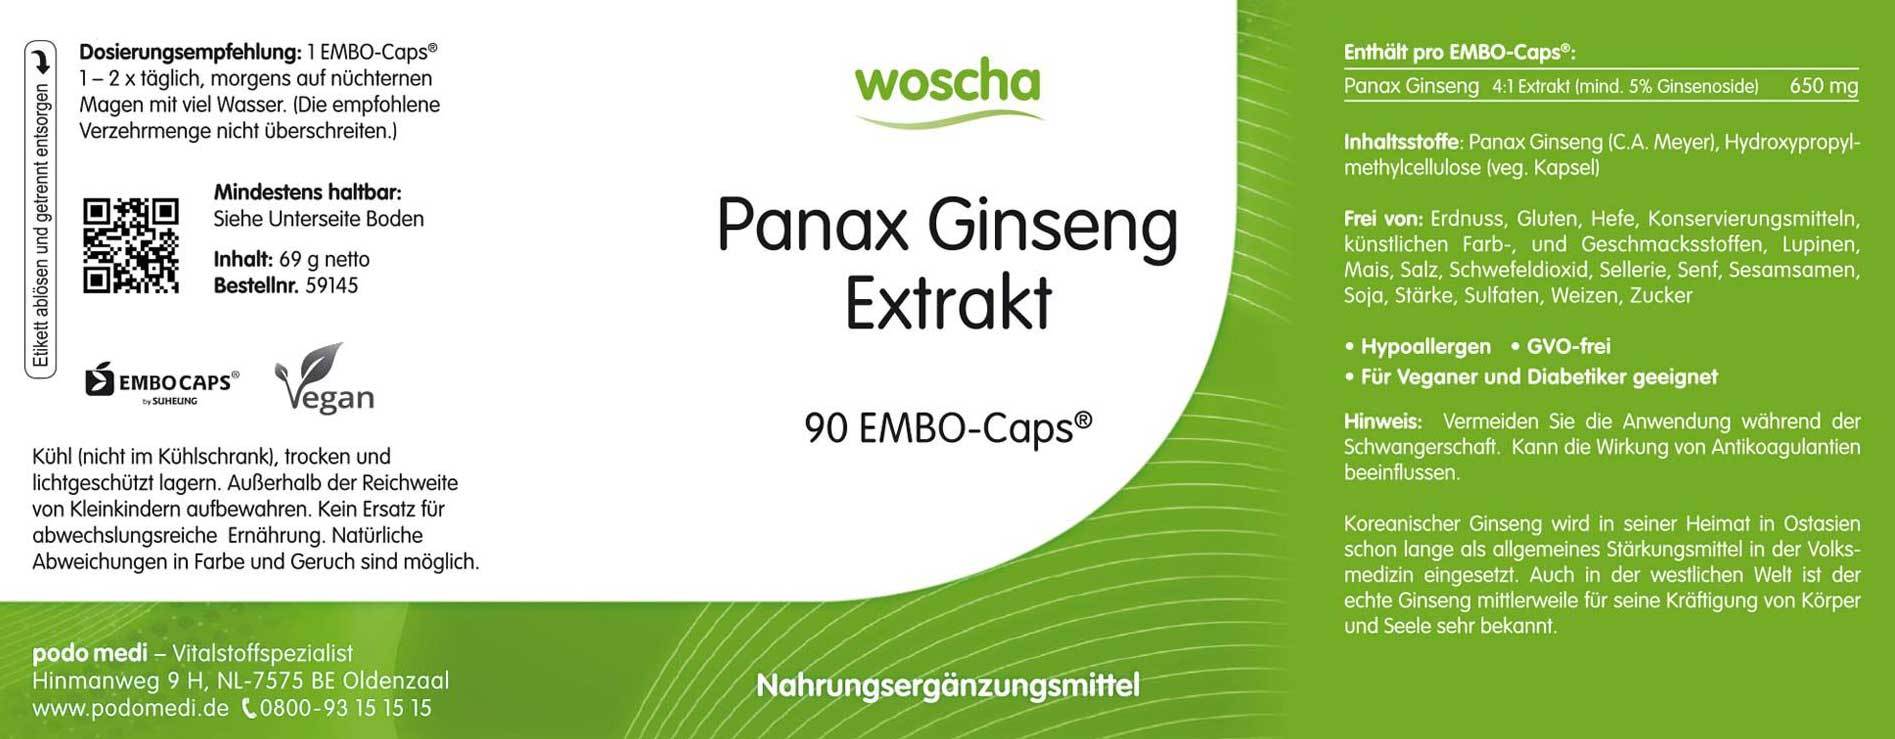 Woscha Panax Ginseng Extrakt von podo medi beinhaltet 90 Kapseln Etikett